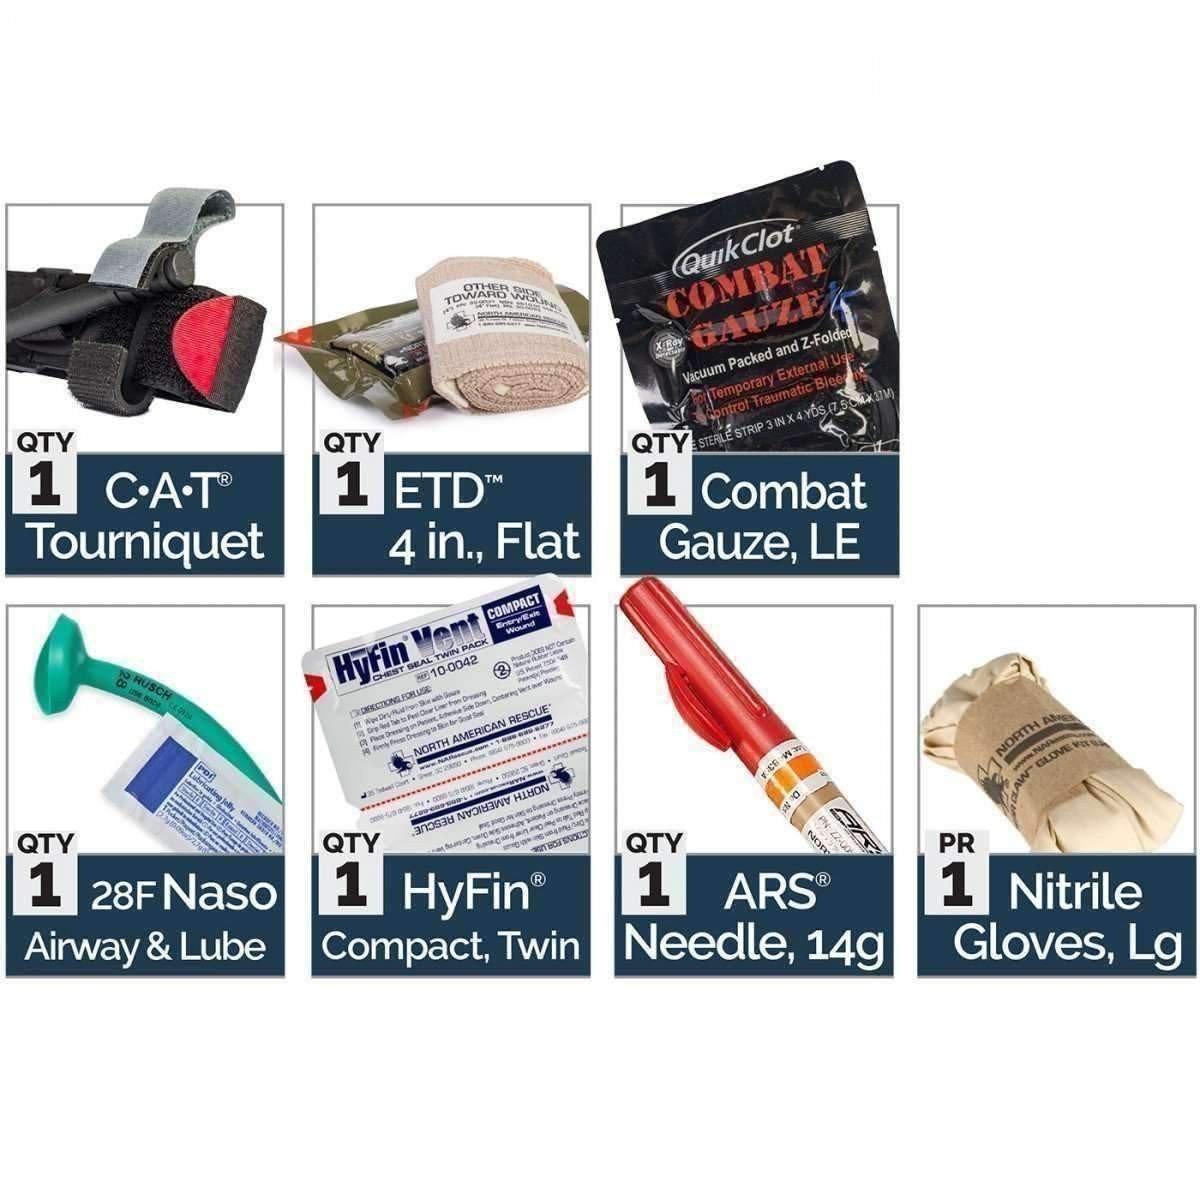 M-FAK Mini First Aid Kit for Law Enforcement - Vendor